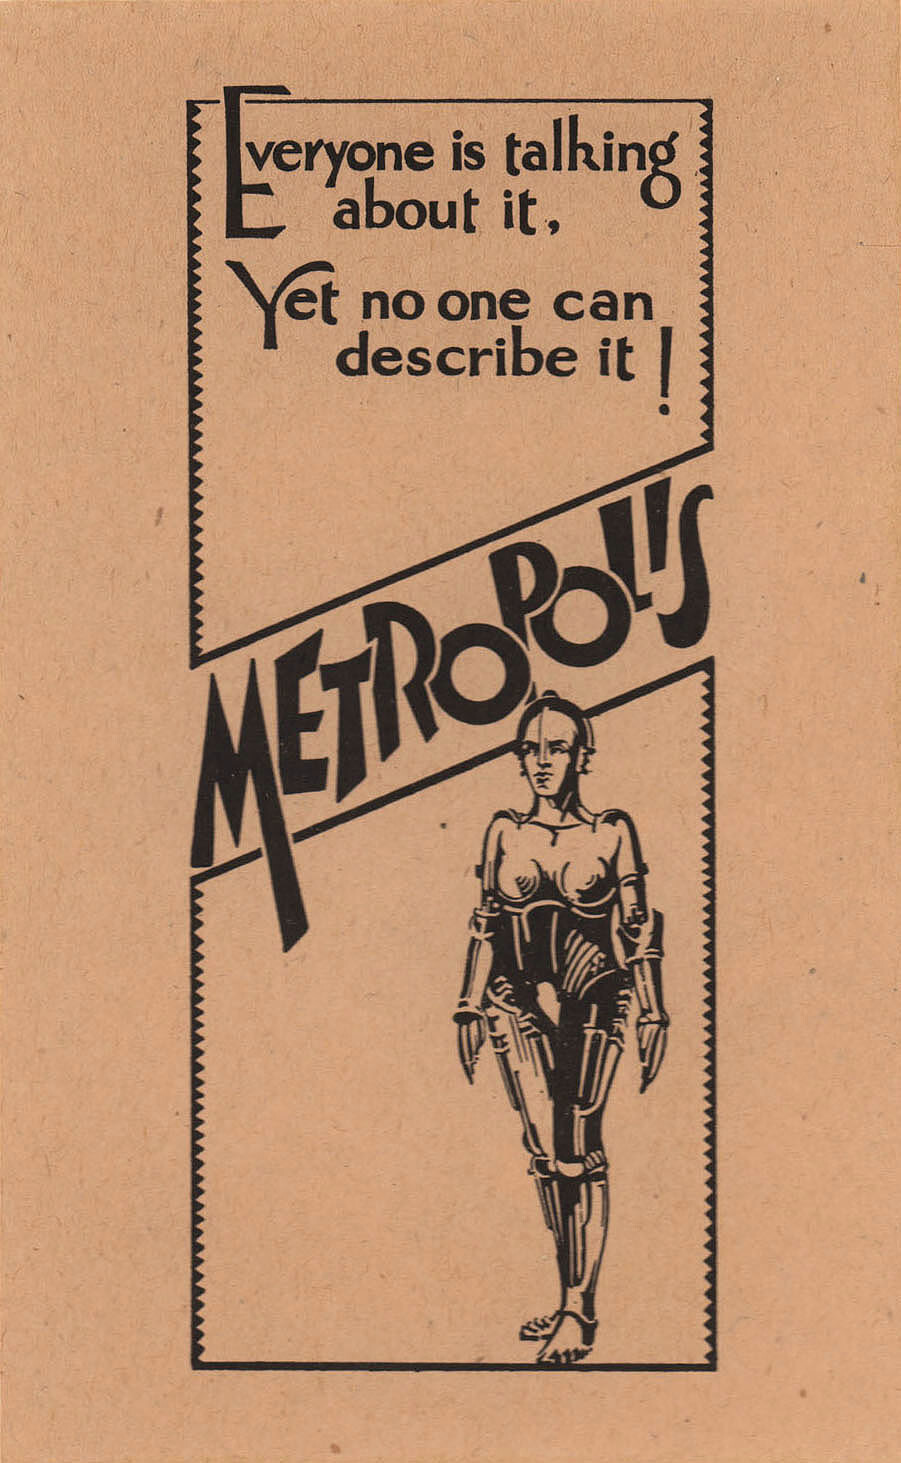 Метрополис (Metropolis, 1927), режиссёр Фриц Ланг, постер к фильму в стиле ар-деко (США, 1927 год) (7)